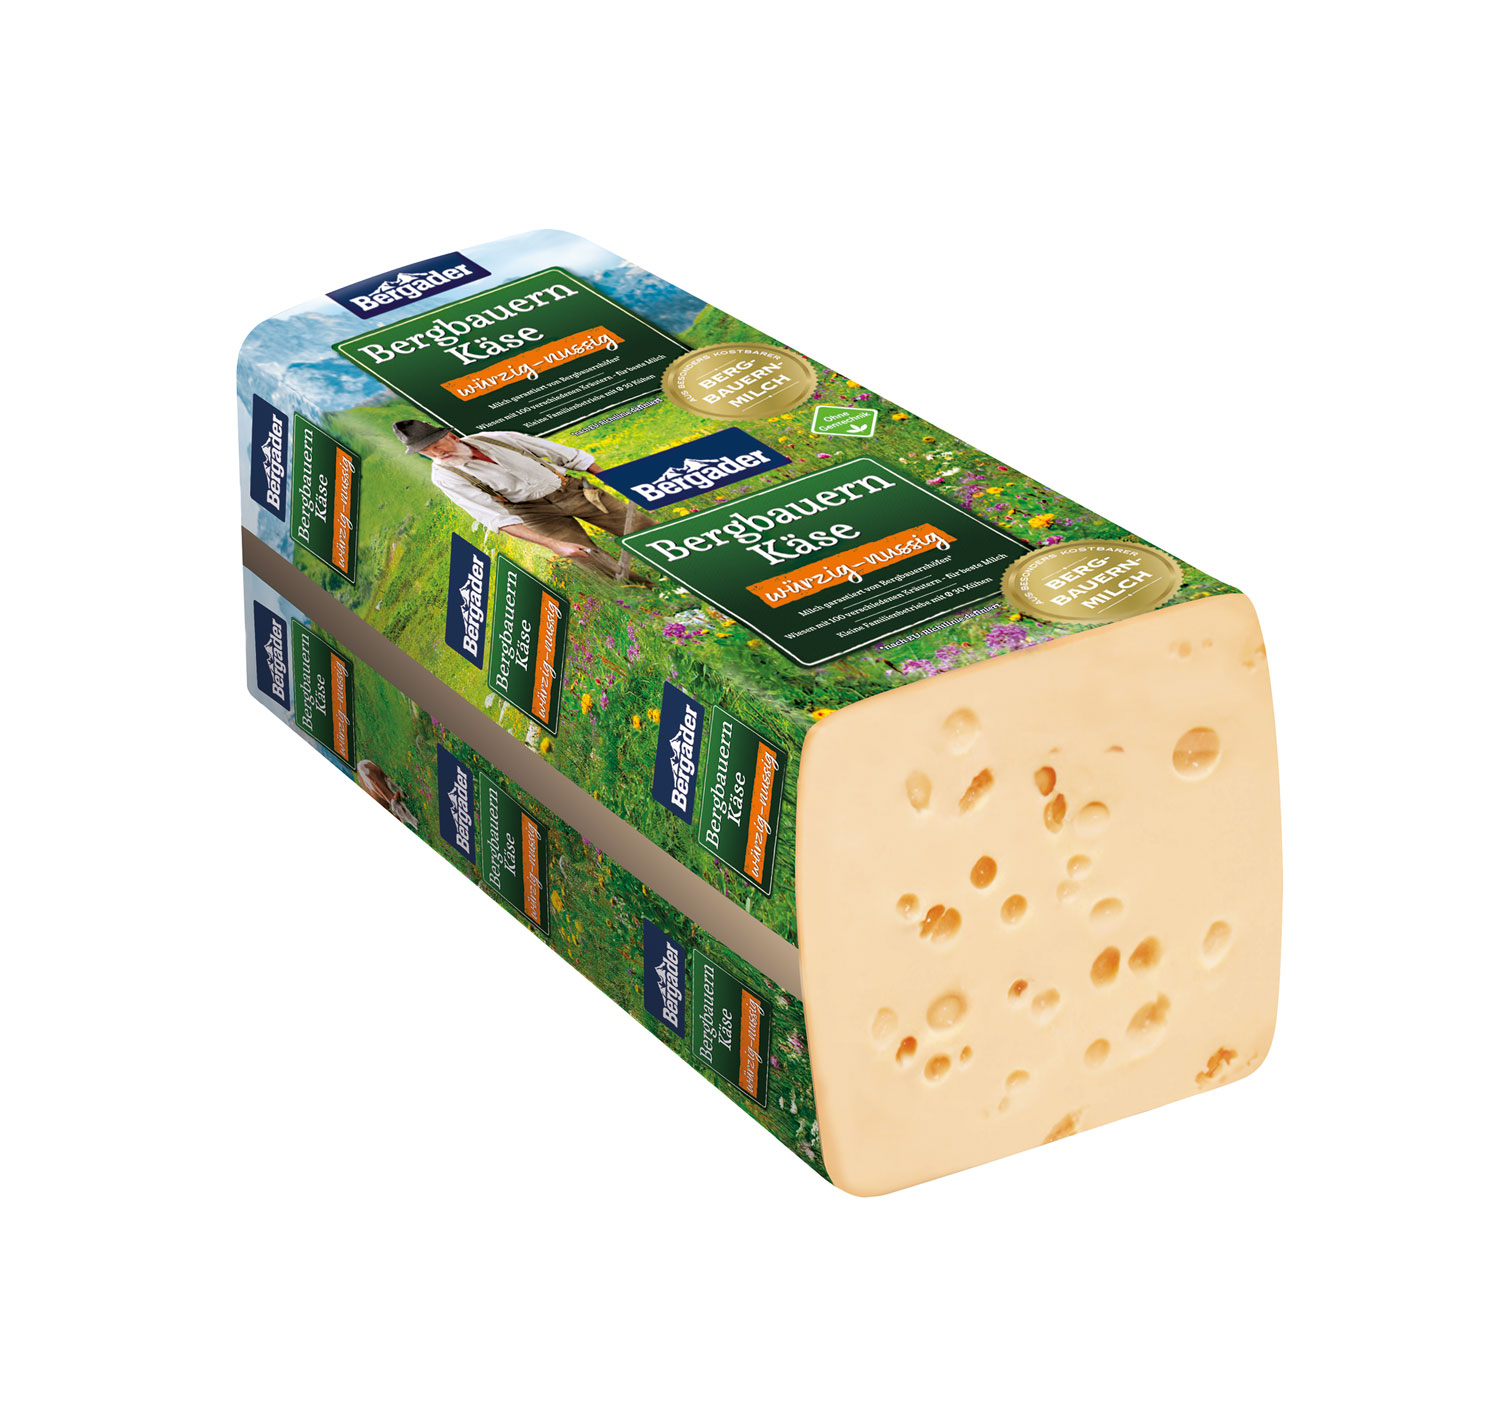 Bergbauern Käse würzig-nussig ca. 2800g MHD 05.03. – VDMP